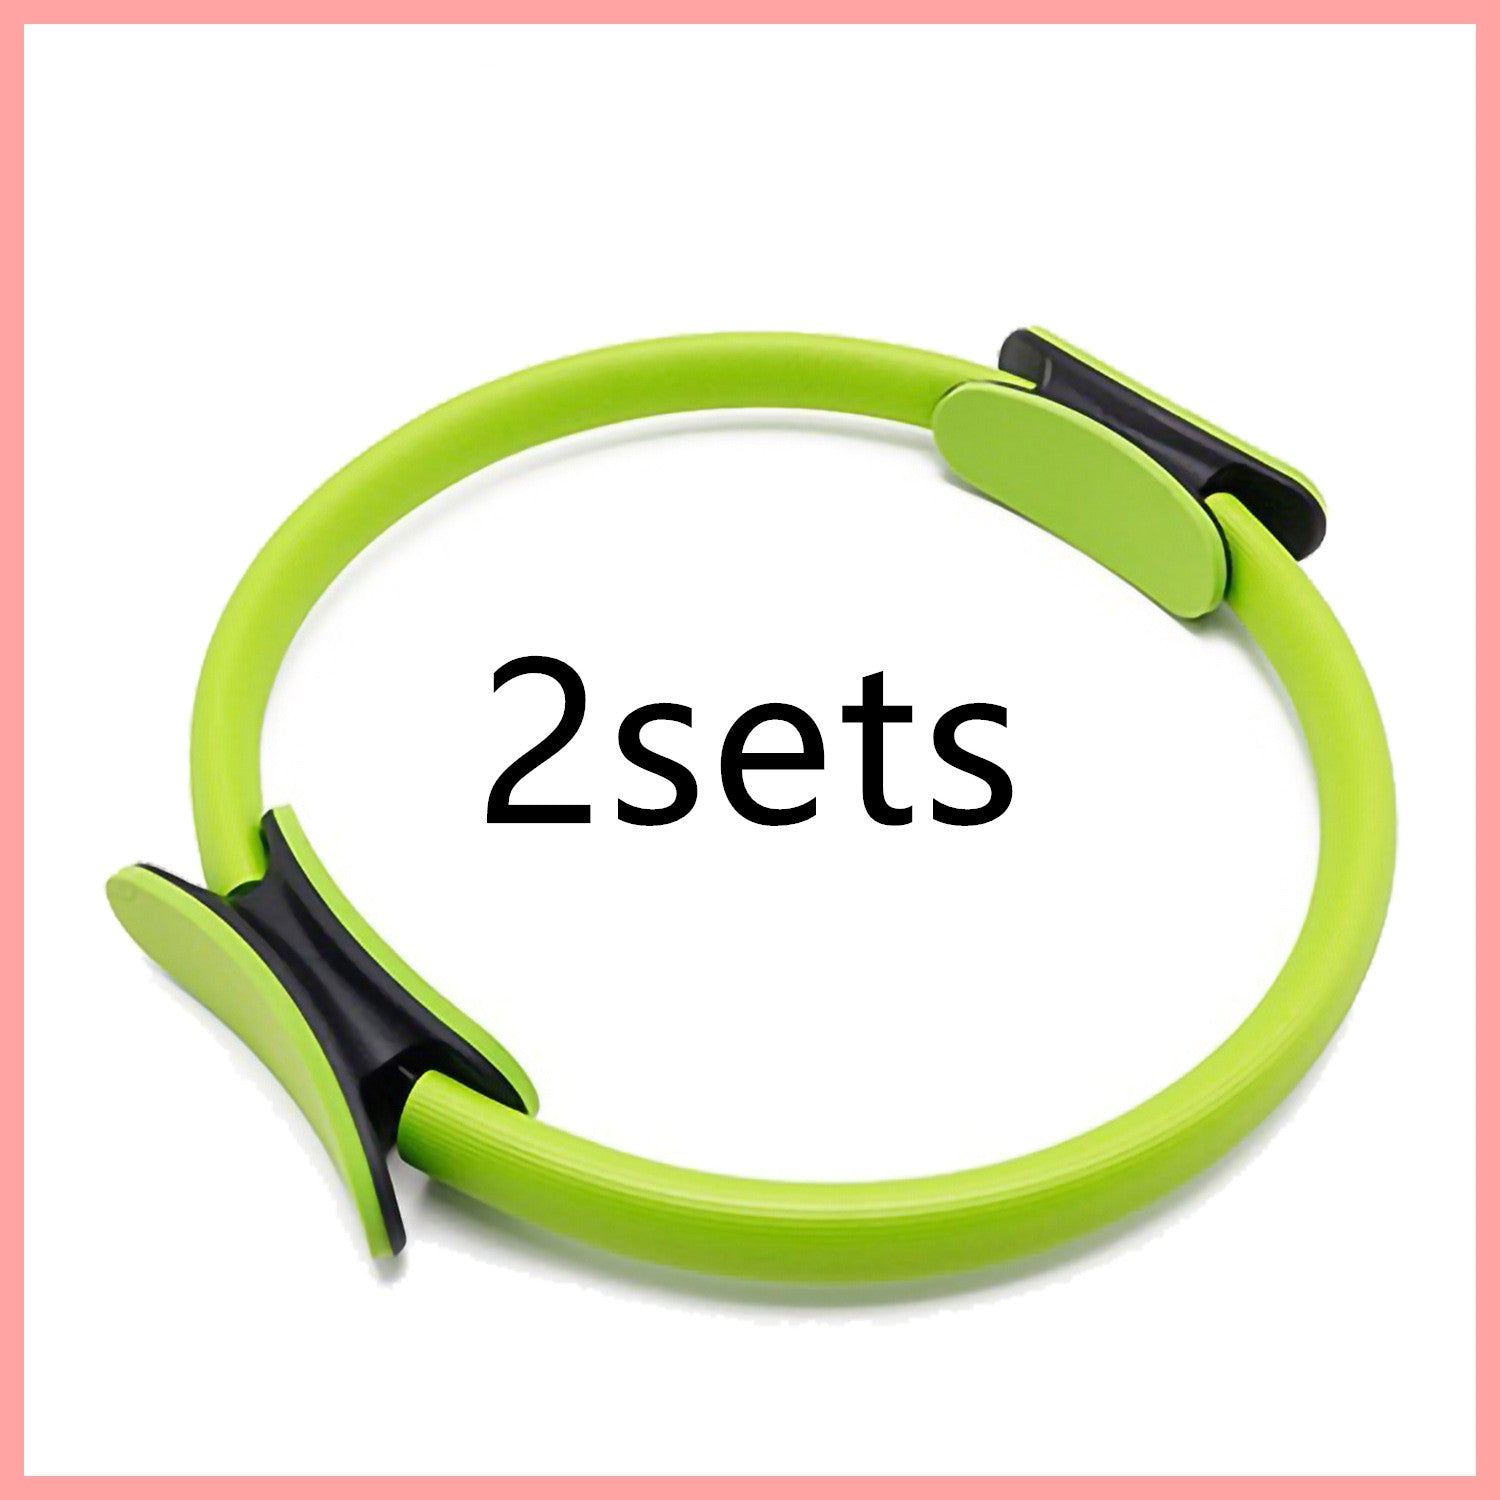 Yoga Fitness Pilates Ring für Frauen und Mädchen. Kreisförmige magische doppelte Übung für das Heim-Fitnessstudio. Trainingssport zum Abnehmen und zur Körperwiderstandsfähigkeit.